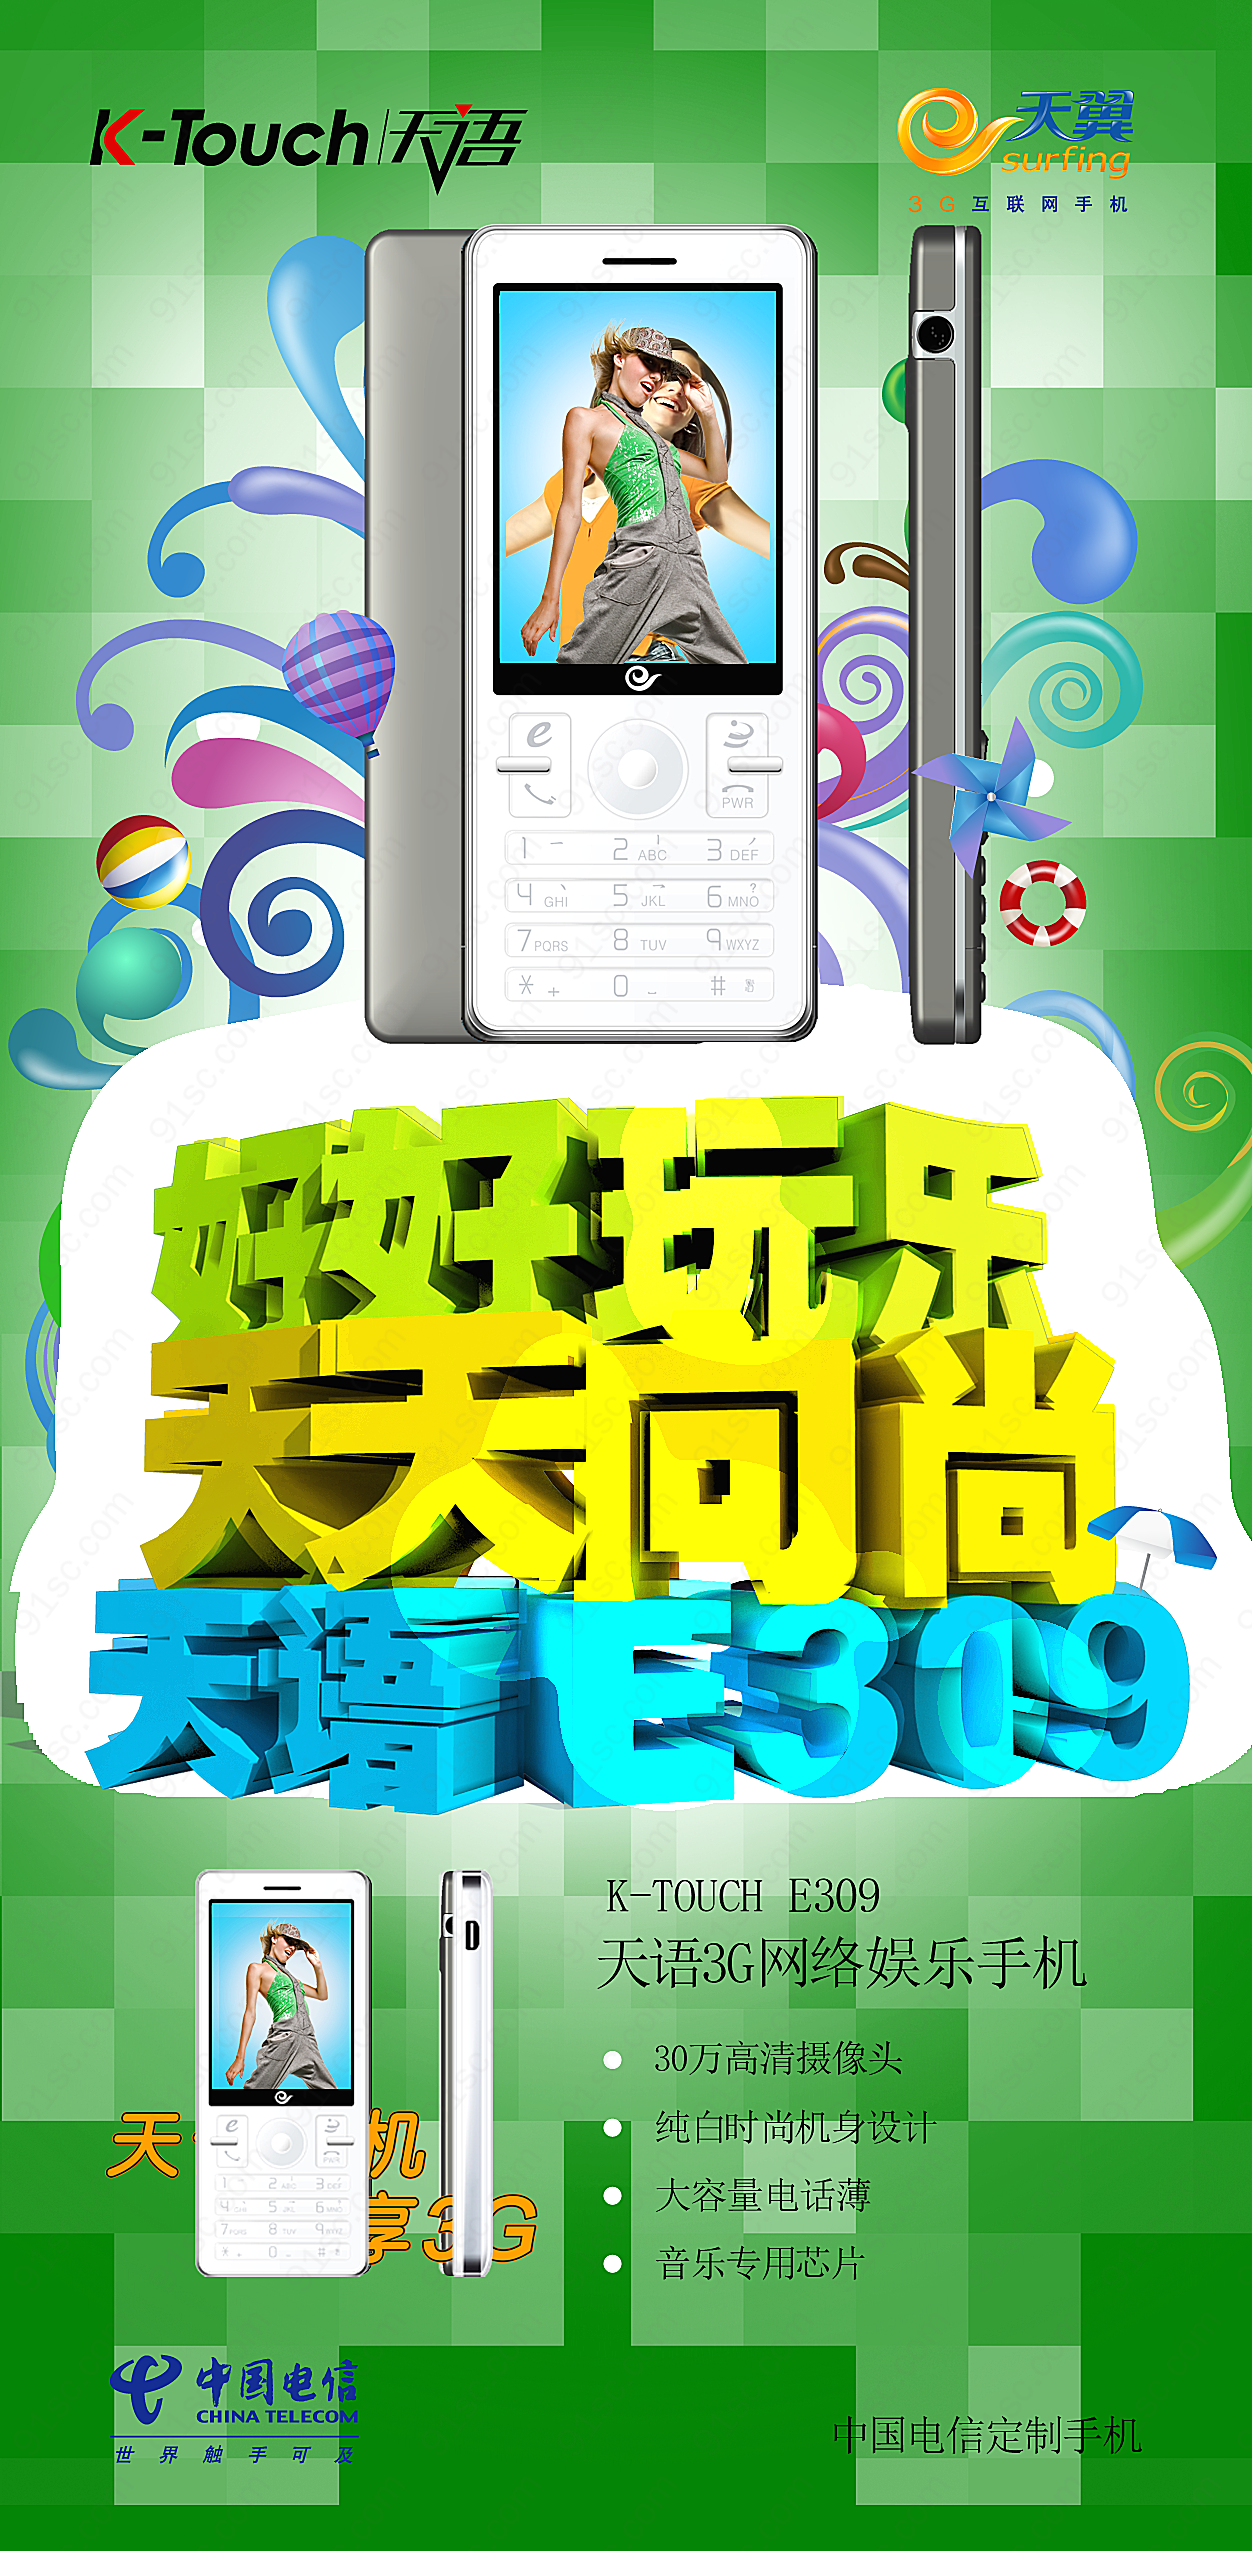 天语3g手机广告